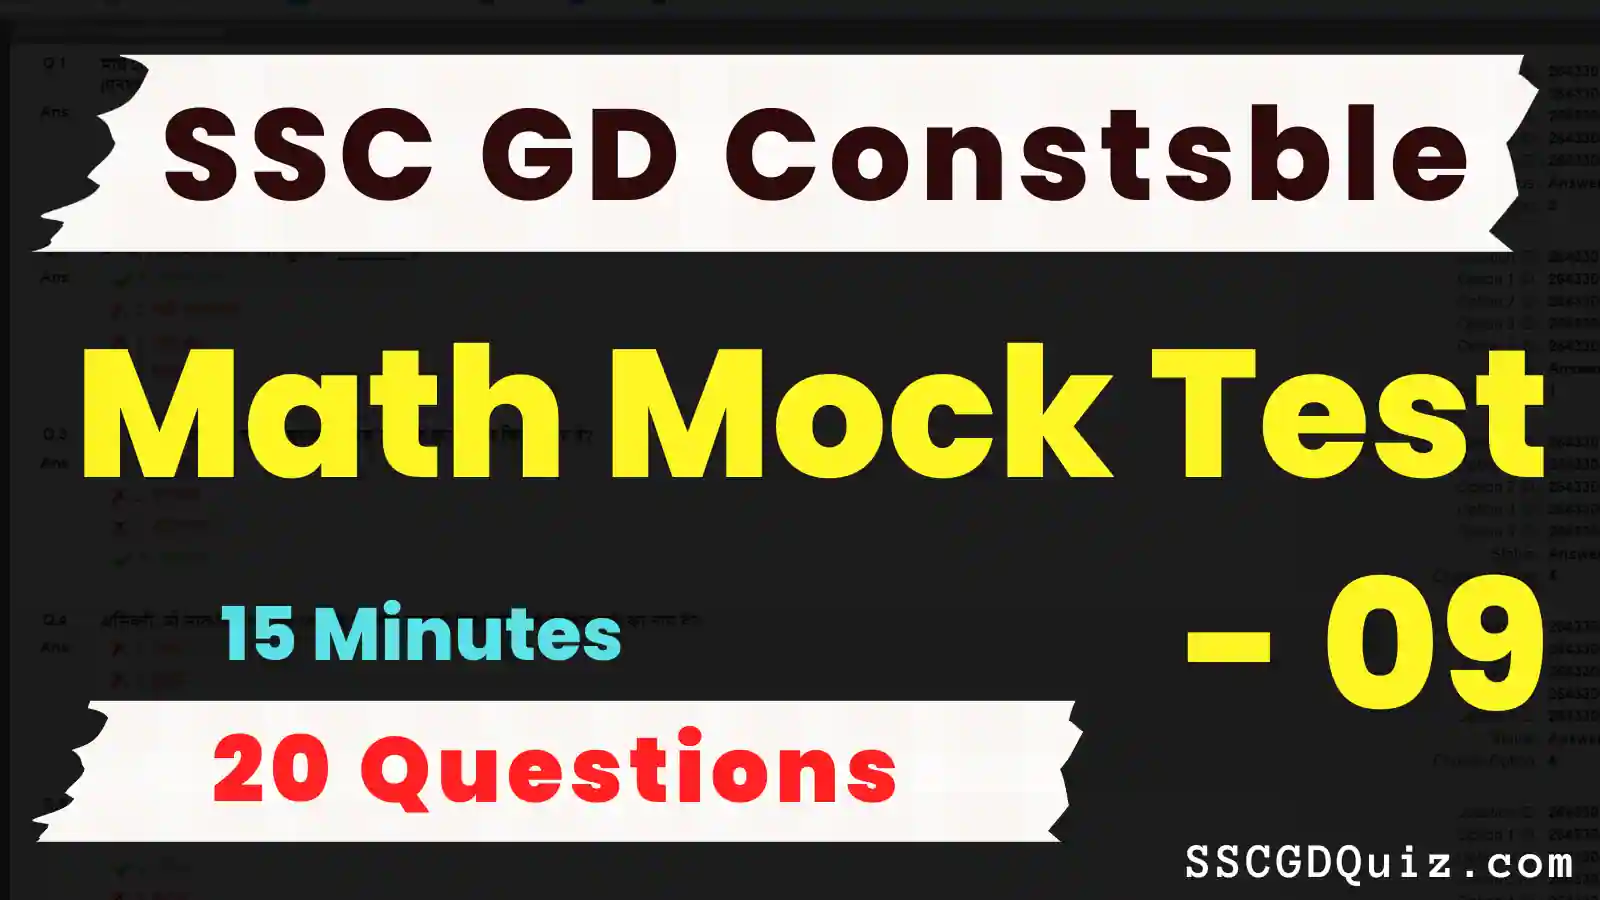 SSC GD Constable Math Mock Test – 09